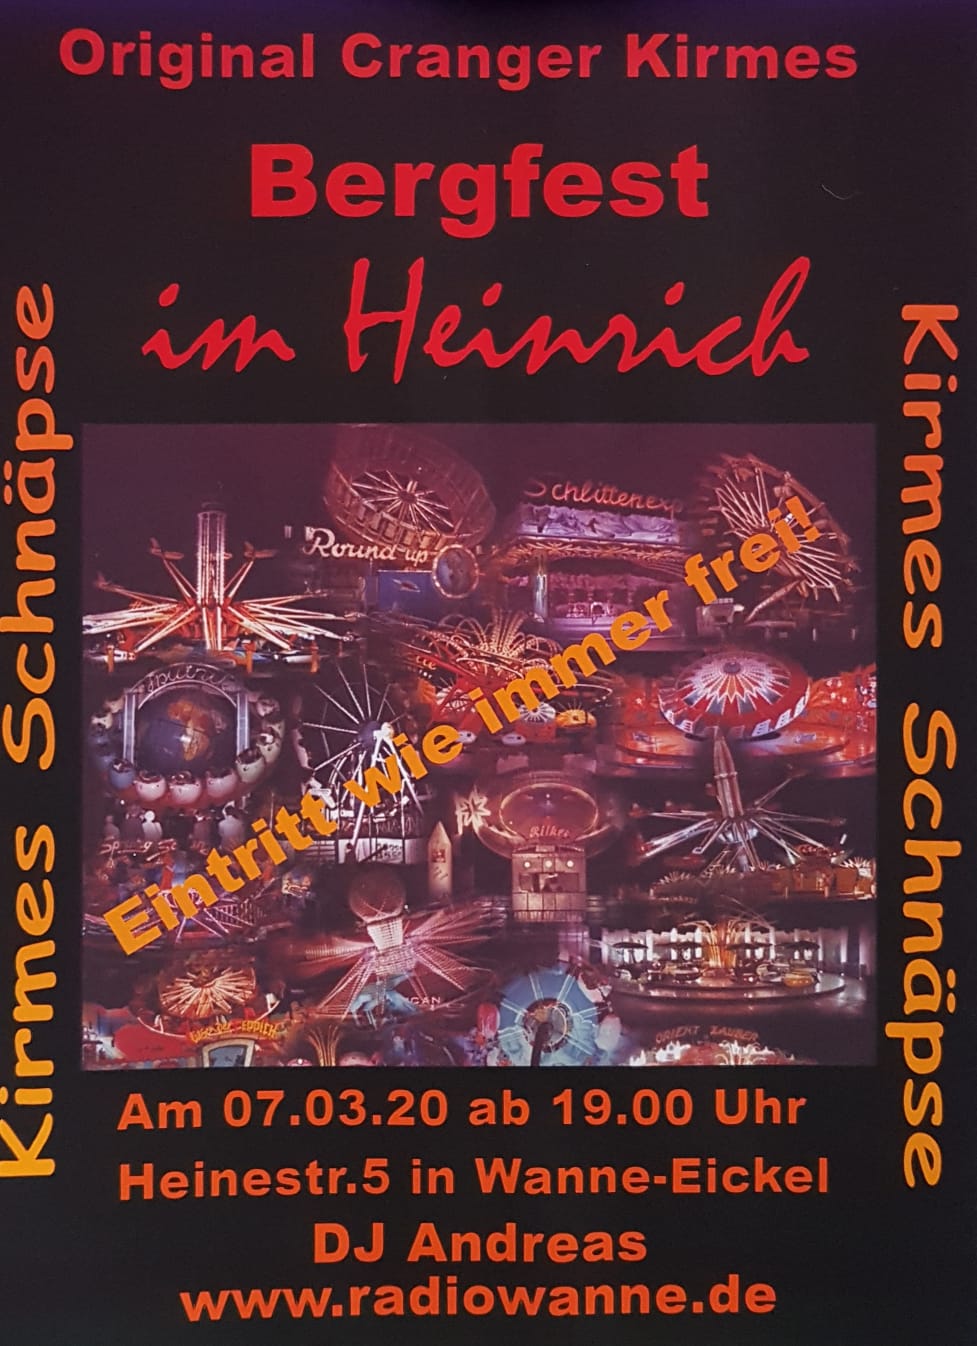 Am Samstag, den 07.03.2020, findet das 17. Original Cranger Kirmes Bergfest im Heinrich, Heinestr.5, 44649 Wanne-Eickel(Herne) statt. Beginn ist um 19.00 Uhr. Der Eintritt ist frei